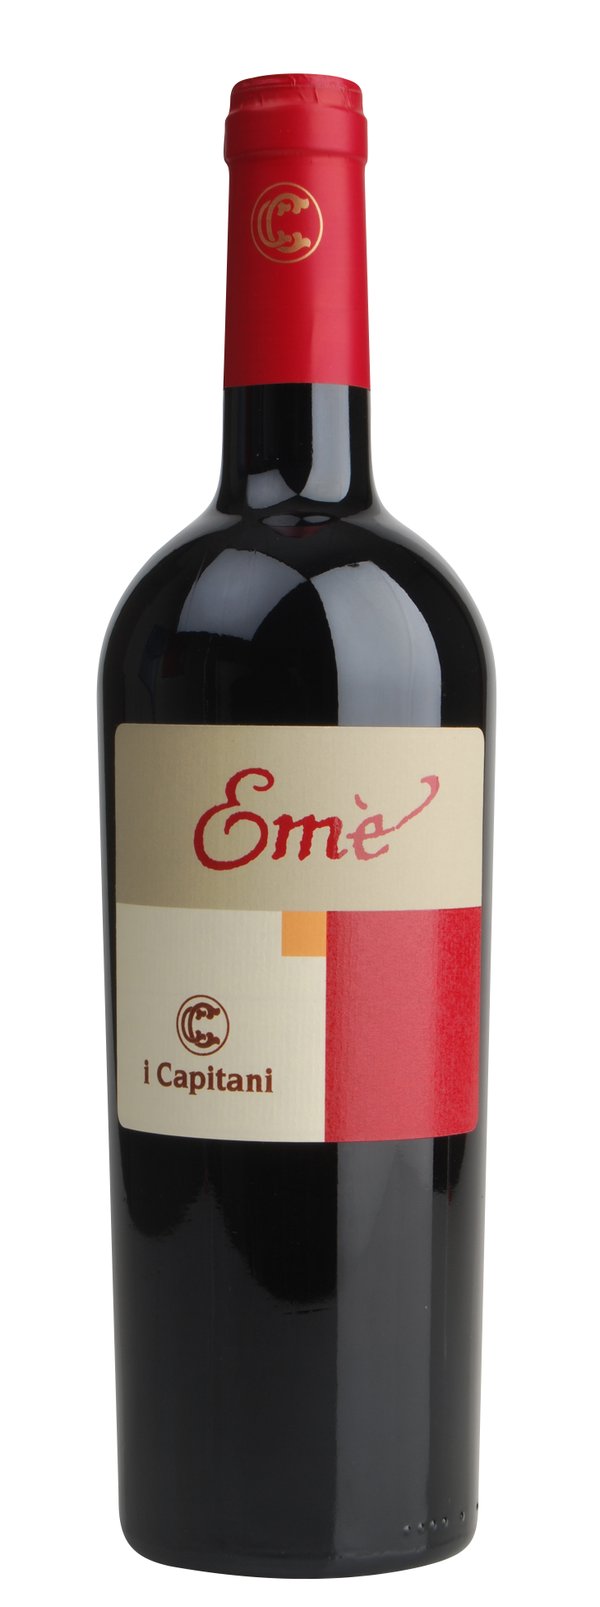 Campania Rosso "EMÈ" IGT 2019 I Capitani